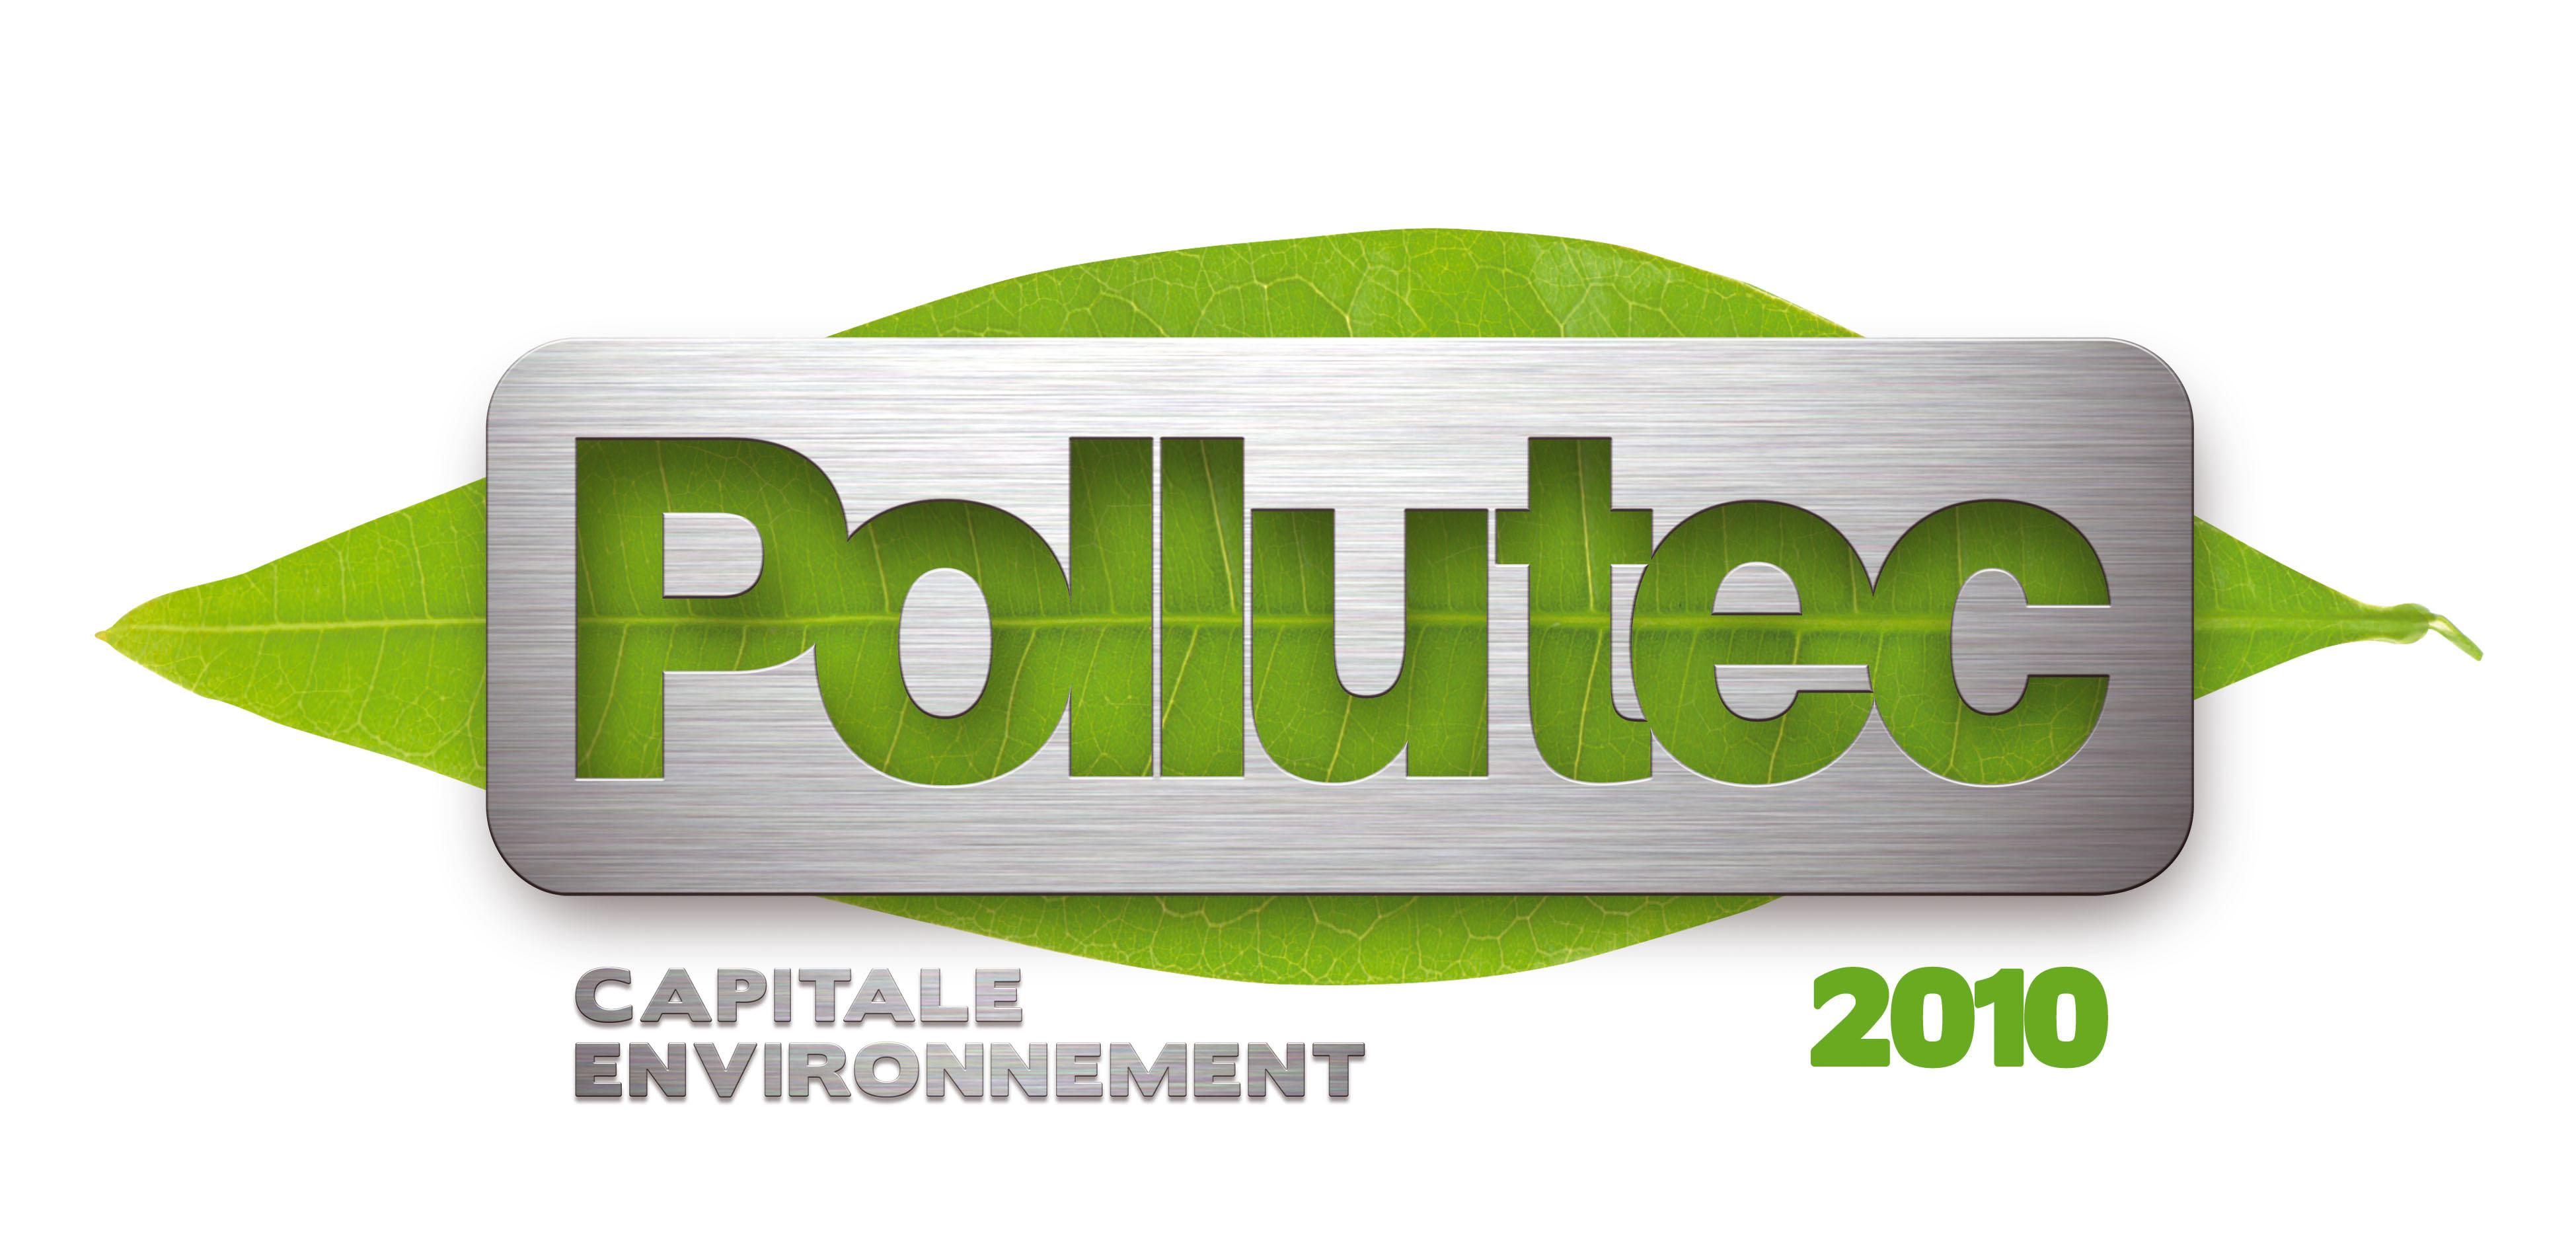 POLLUTEC 2010 : Leader mondial du marché de l’environnement